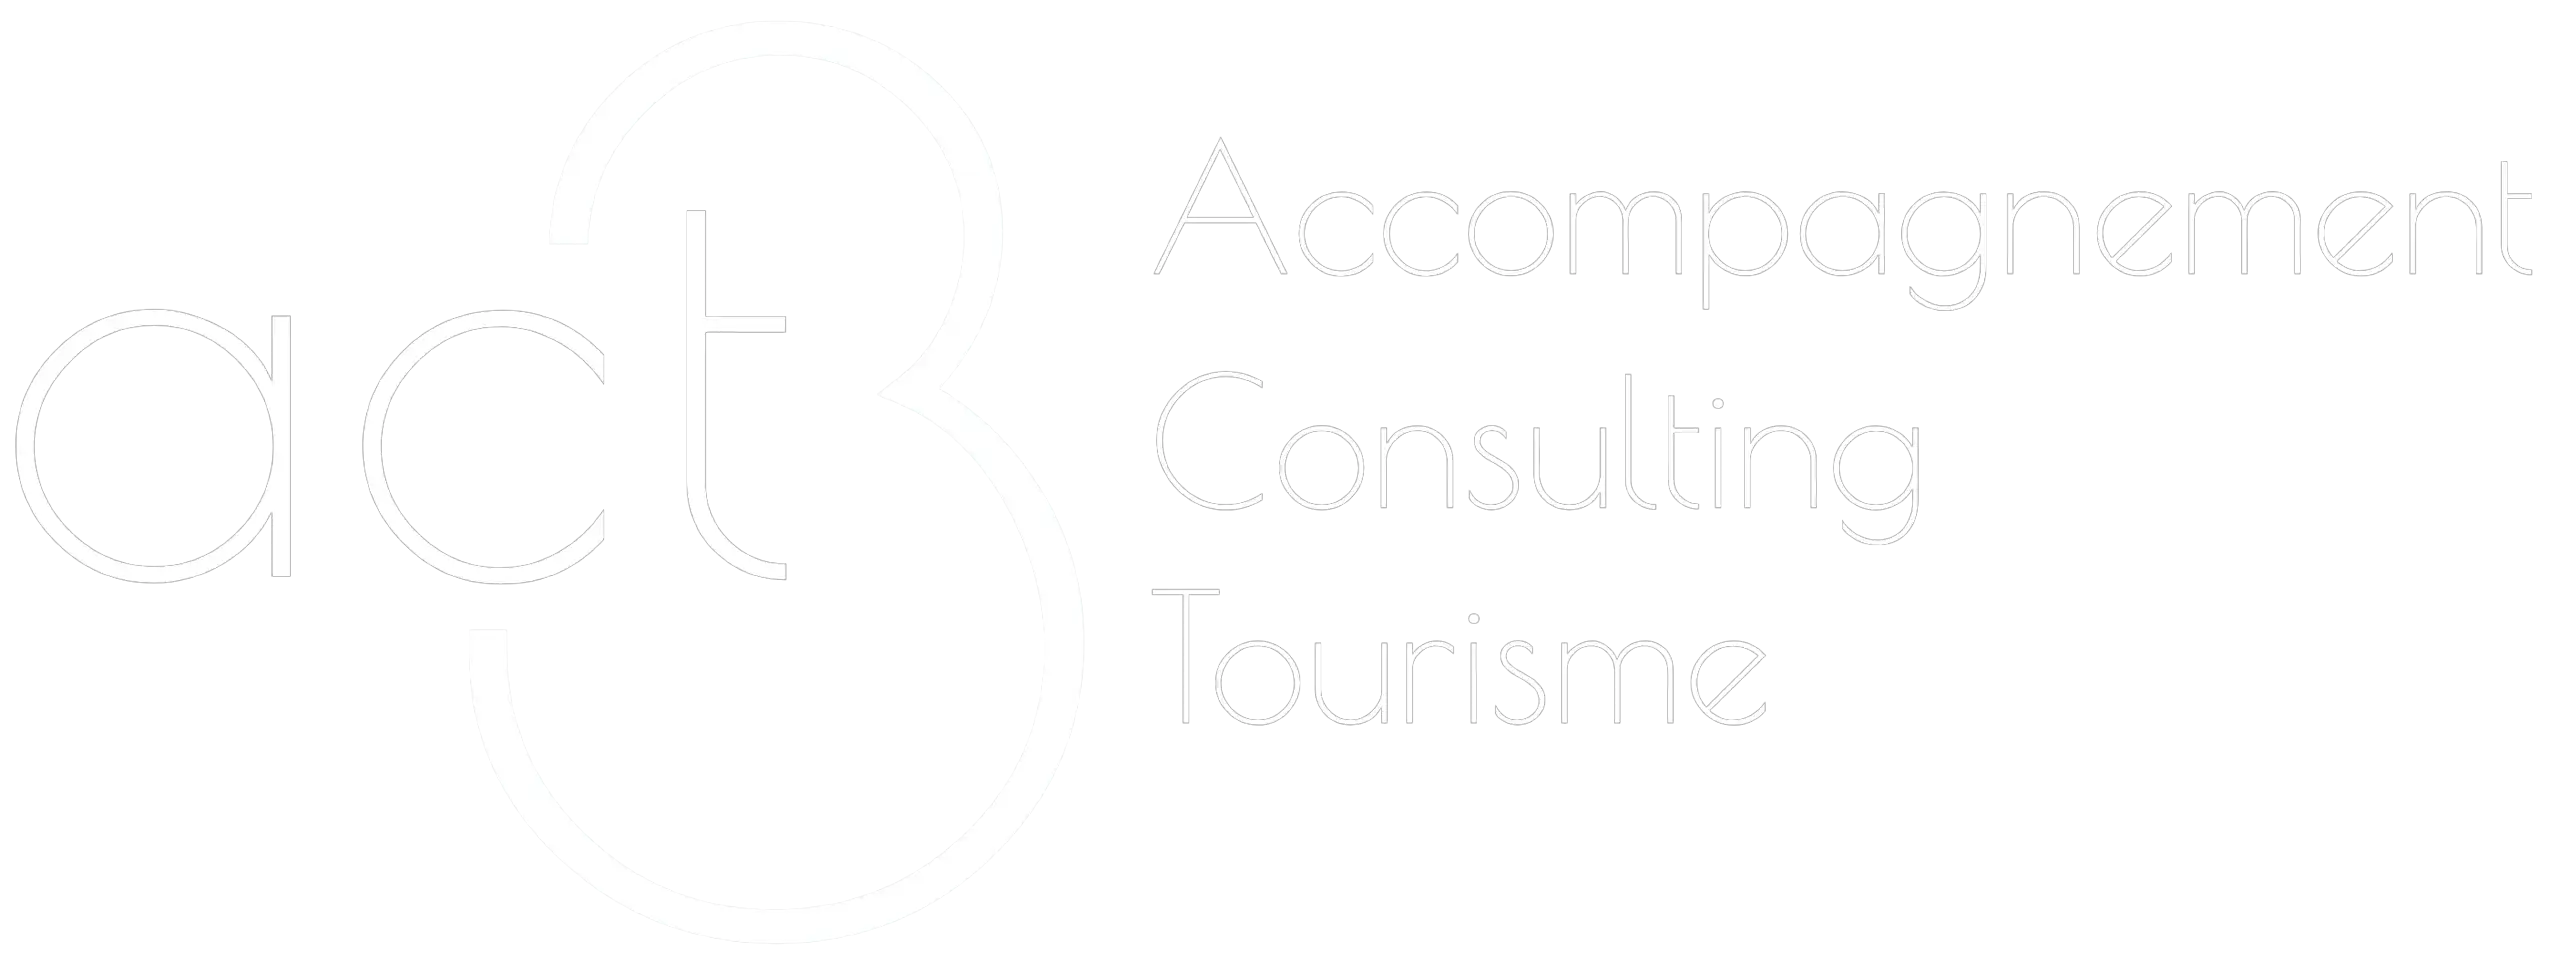 Consulting et  Tourisme